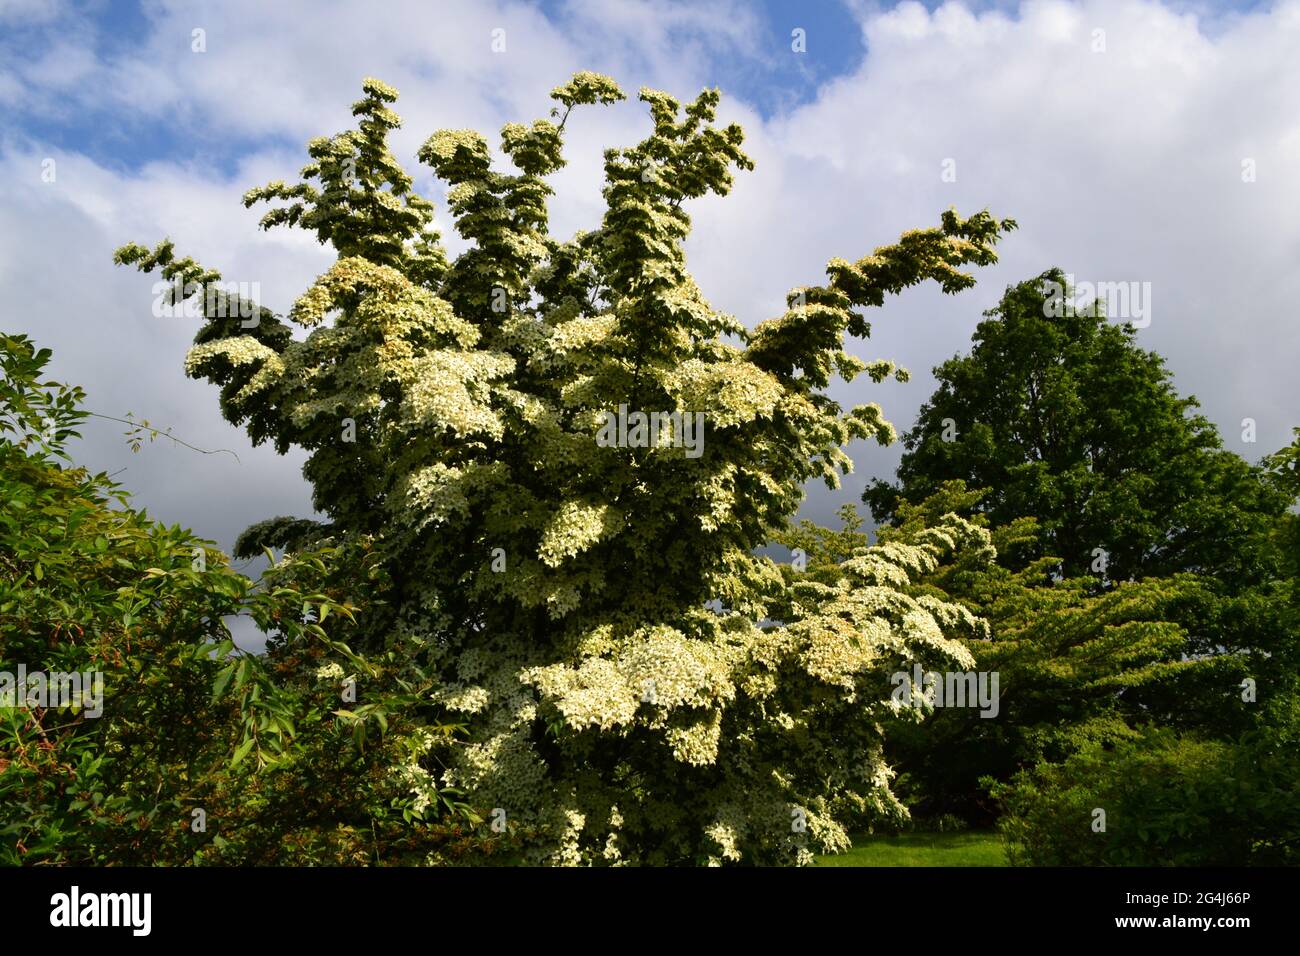 Arbre Cornus Kousa (Dogwood chinois) à Emmetts Garden, près de IDE Hill, Kent. Un spectaculaire arbre à fleurs de juin avec des pétales de crème Banque D'Images